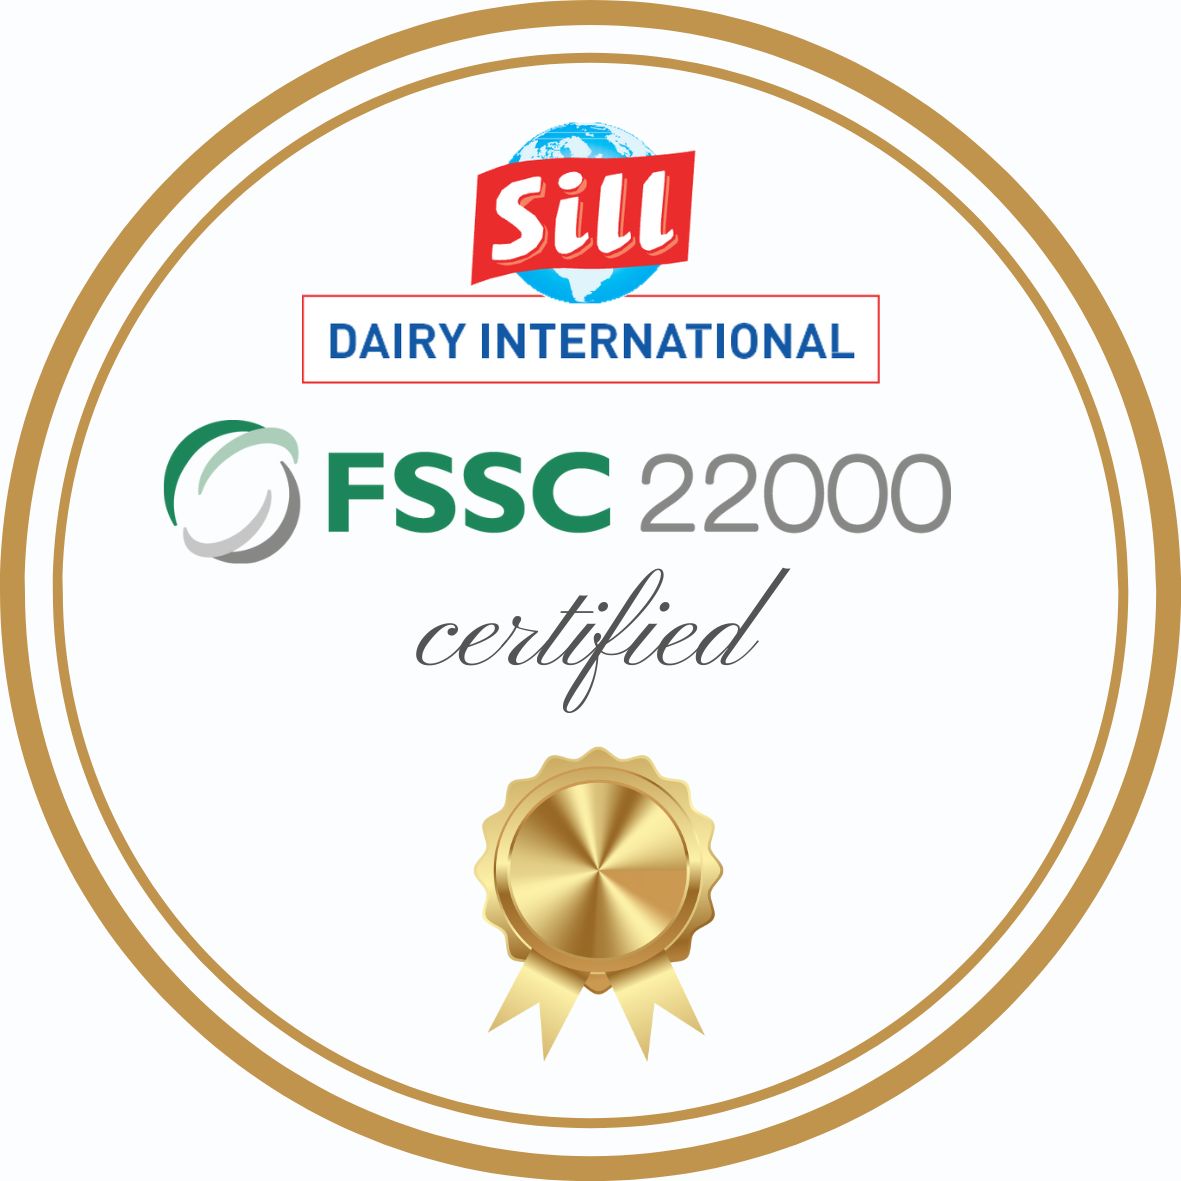 Sill Dairy International, filiale dédiée à la fabrication de produits de nutrition spécialisée du groupe Sill Entreprises, est très fière de vous annoncer l’obtention de la certification FSSC 22 000 !